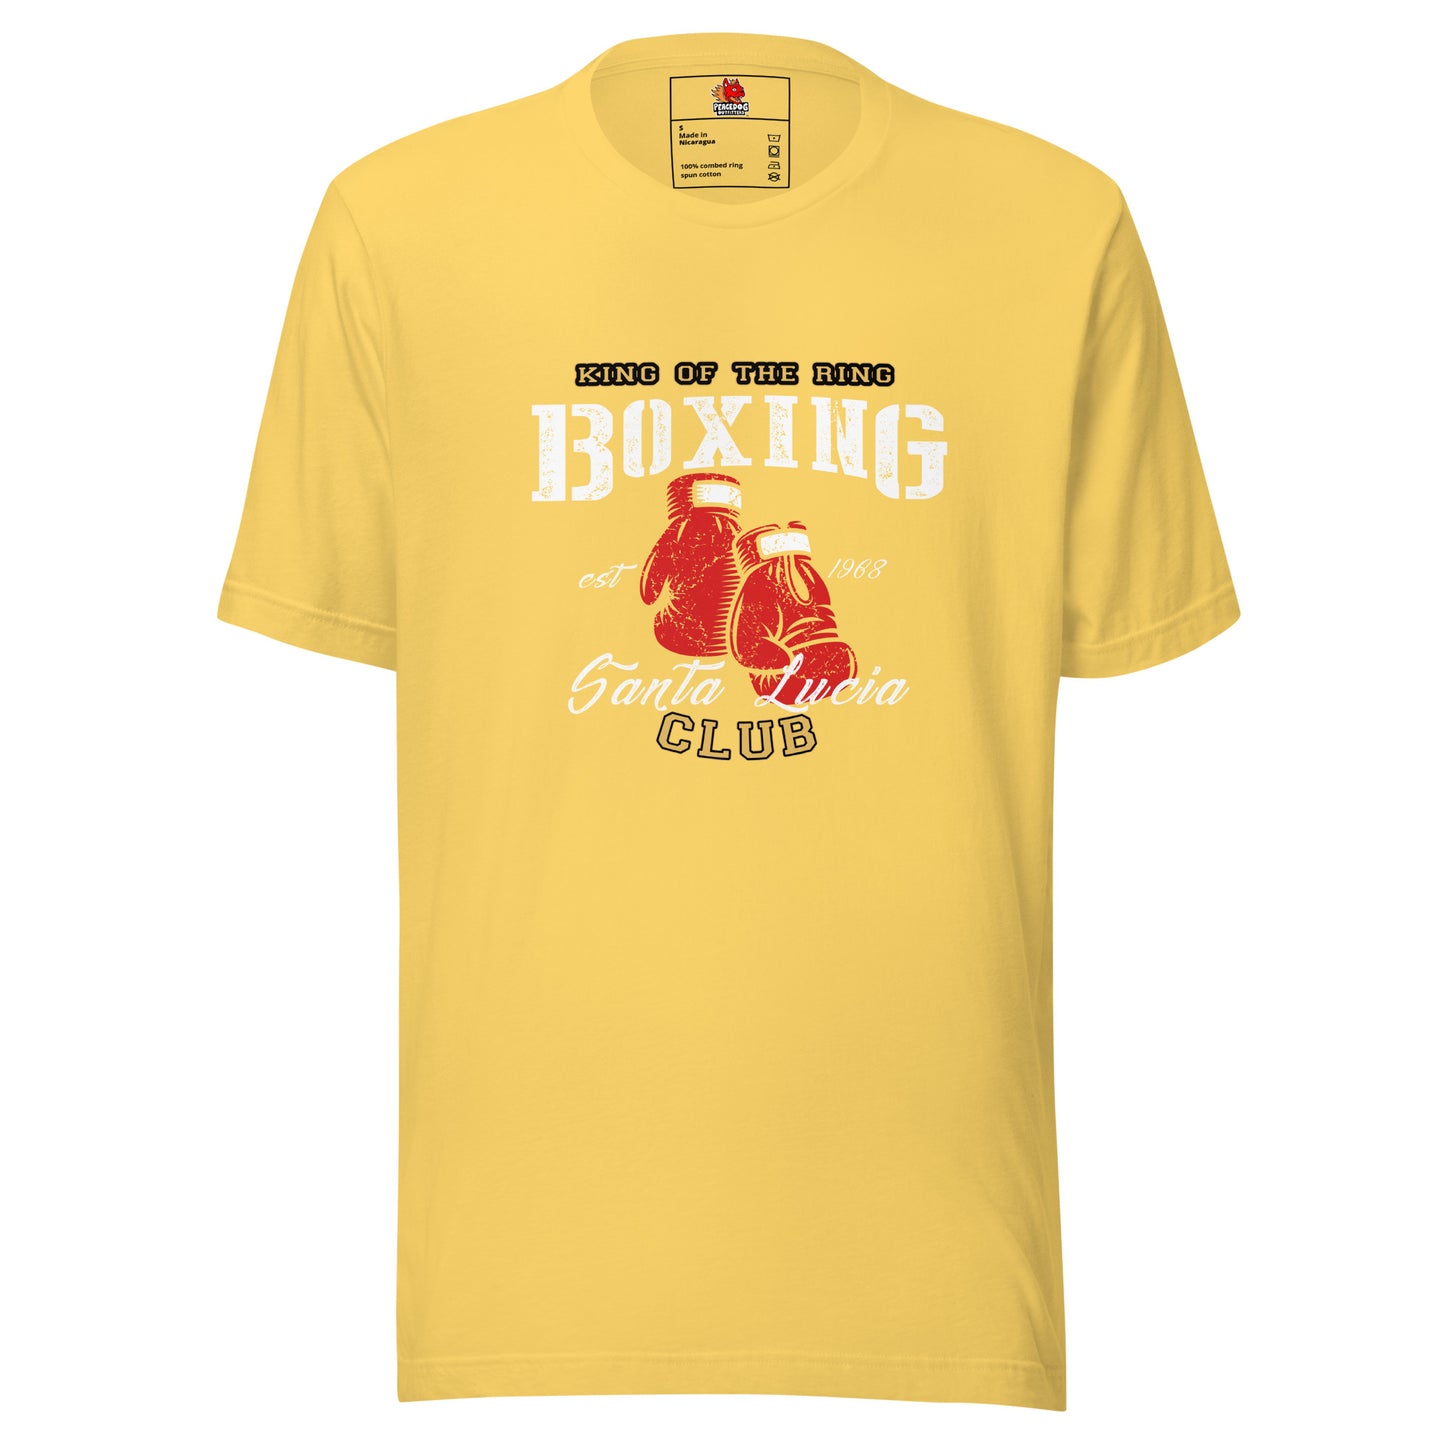 Boxing Club T-shirt